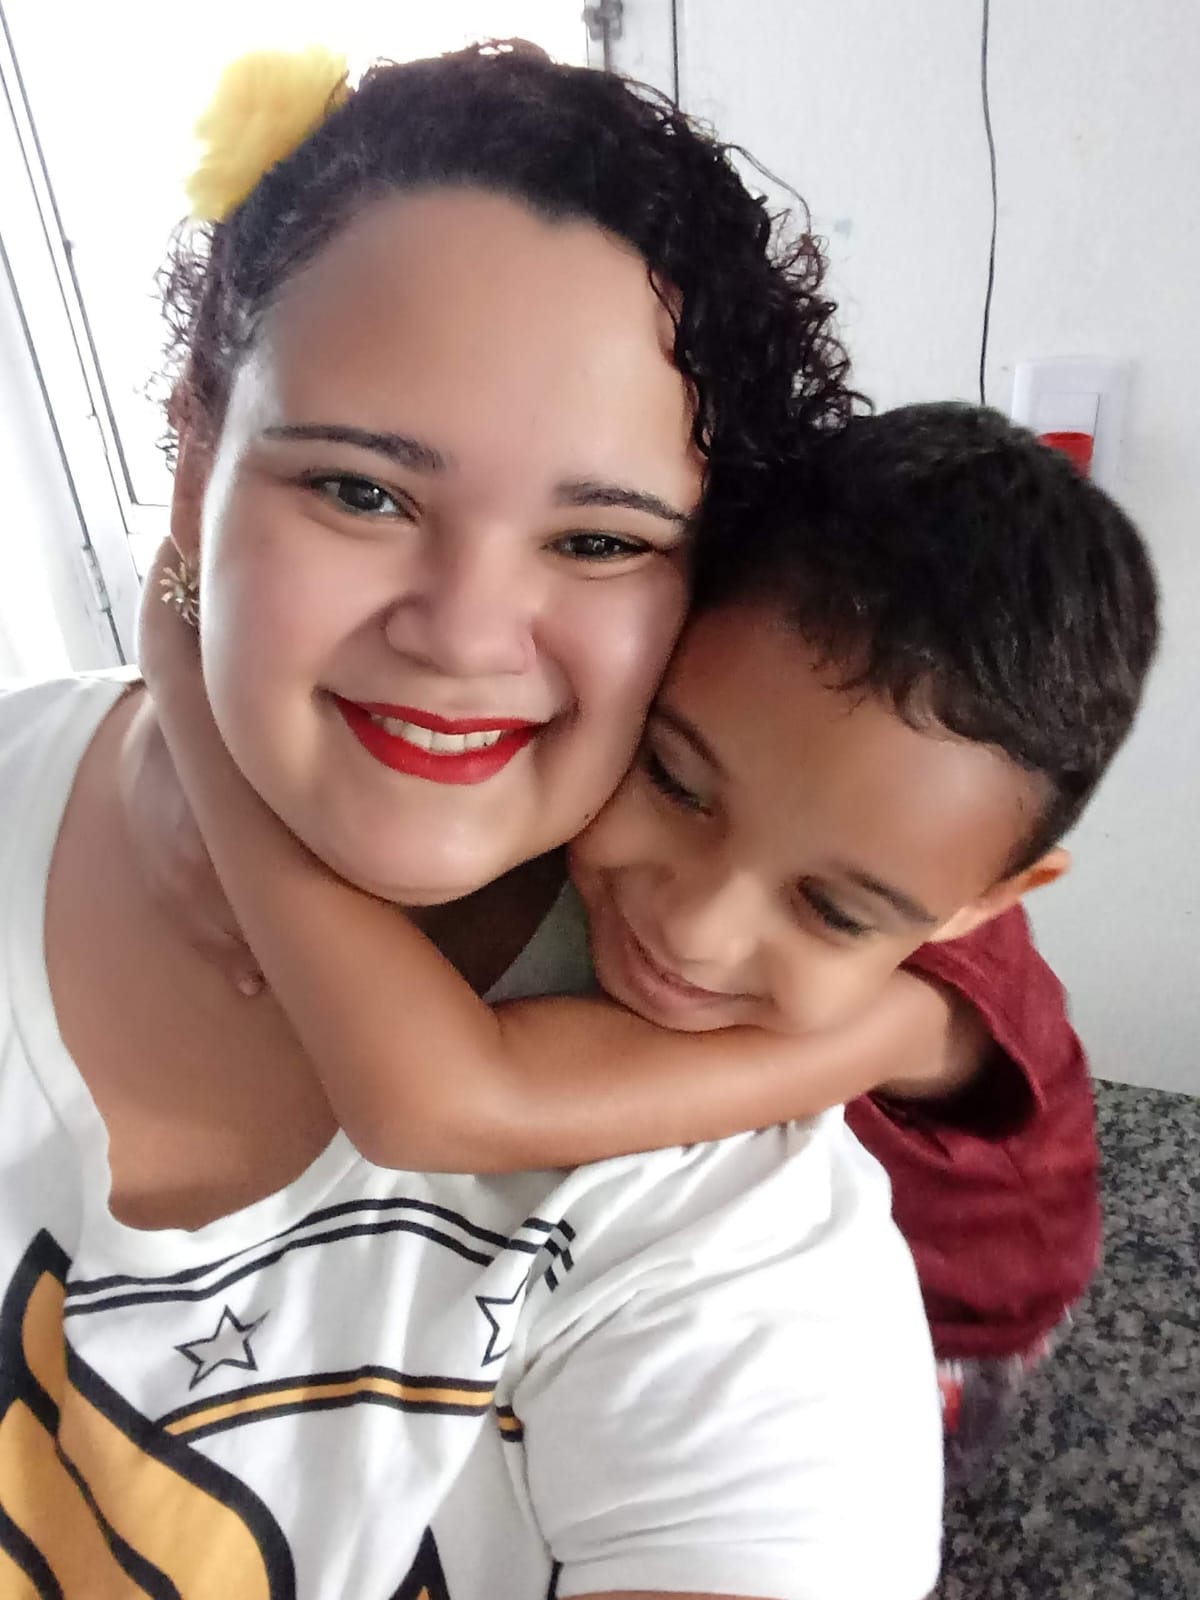 Foto de Cláudia Barrozo e o filho Theo Filipe. Ela é uma mulher parda, de pele clara e cabelos encaracolados, usando camiseta branca. O garoto é negro, de cabelos lisos pretos, que está abraçando a sua mãe com as mãos em torno do pescoço dela.